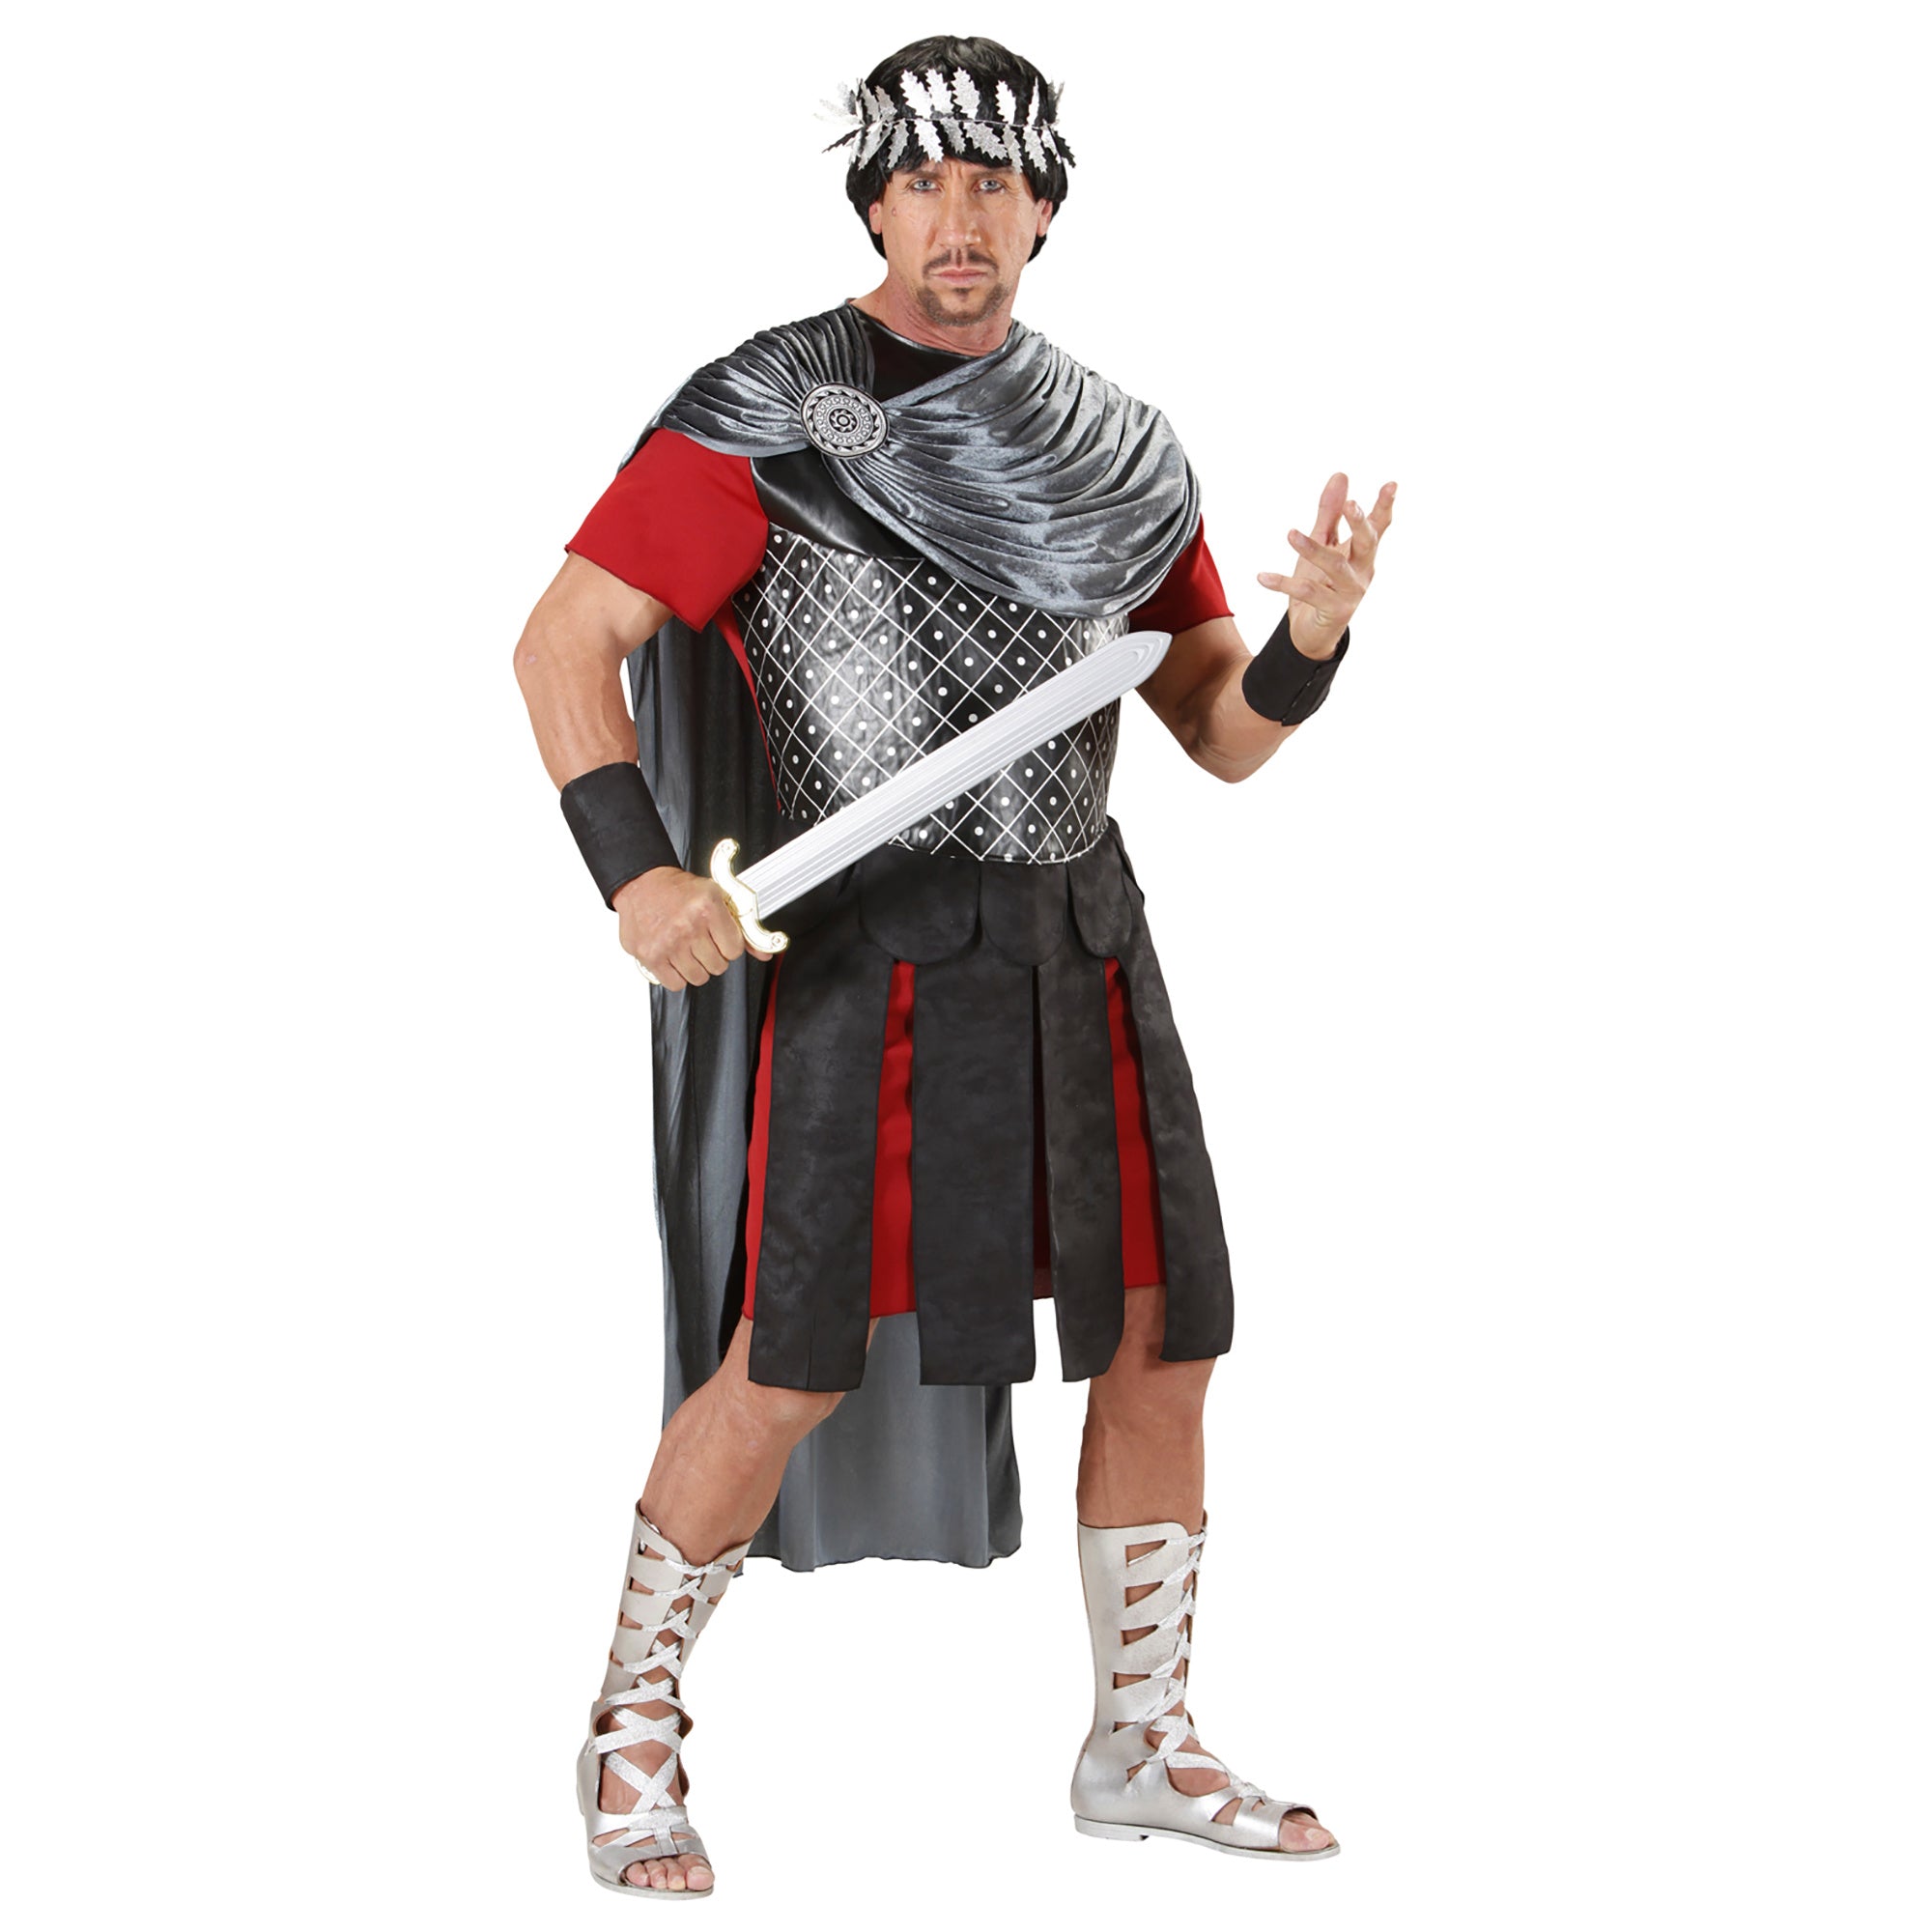 "Romeinse keizer kostuum voor heren - Verkleedkleding - Small"